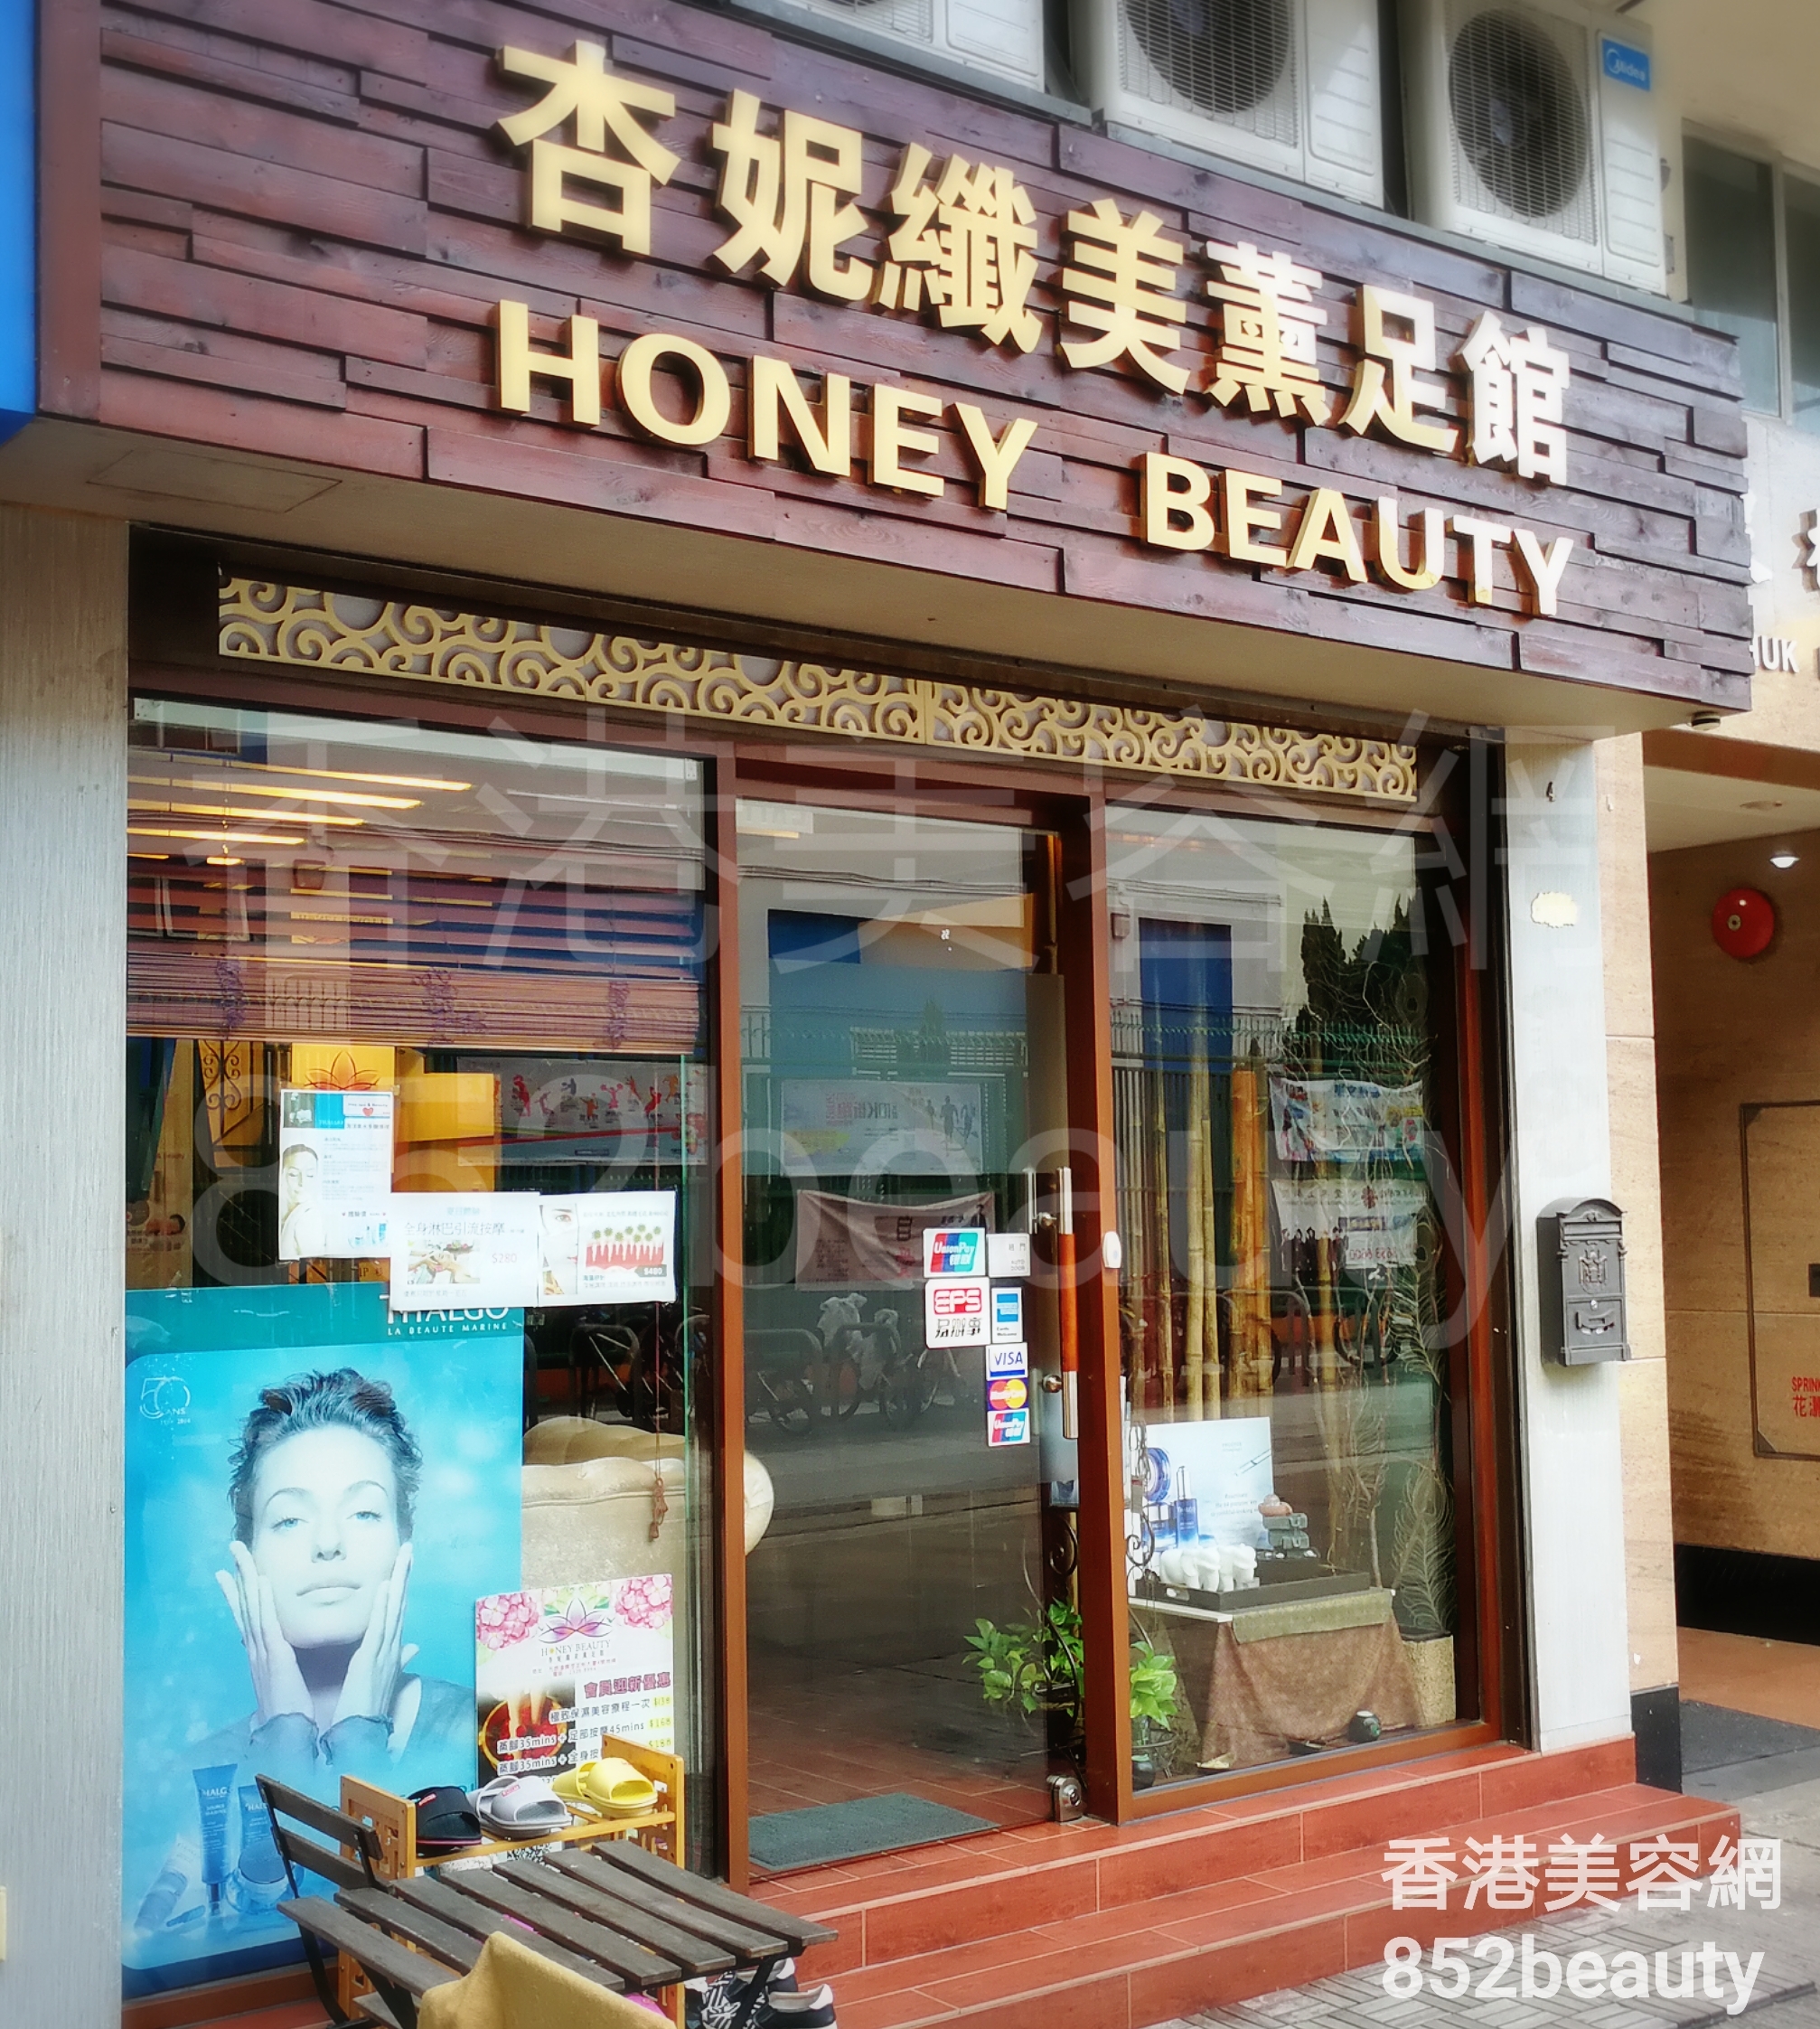 香港美容網 Hong Kong Beauty Salon 美容院 / 美容師: 杏妮纖美薰足館 HONEY BEAUTY